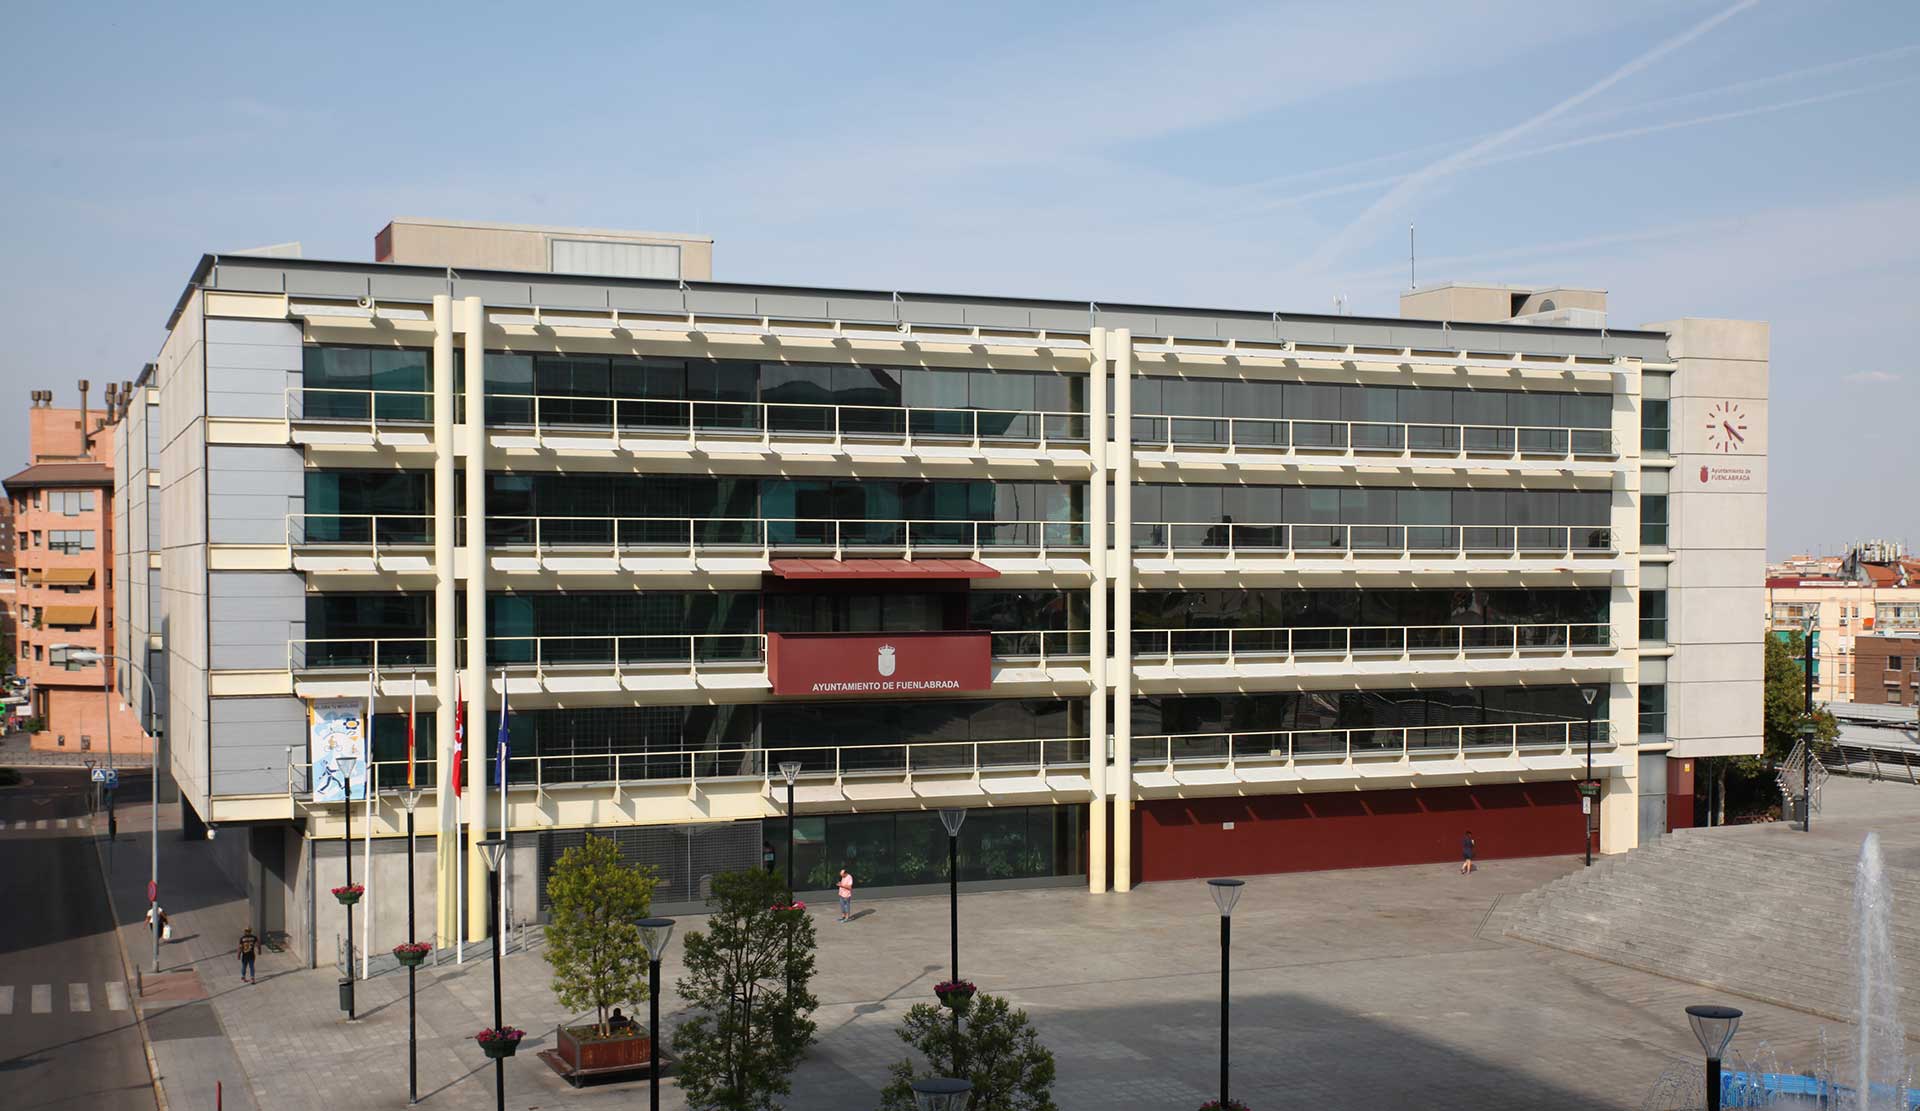 Foto del ayuntamiento de Fuenlabrada en Madrid